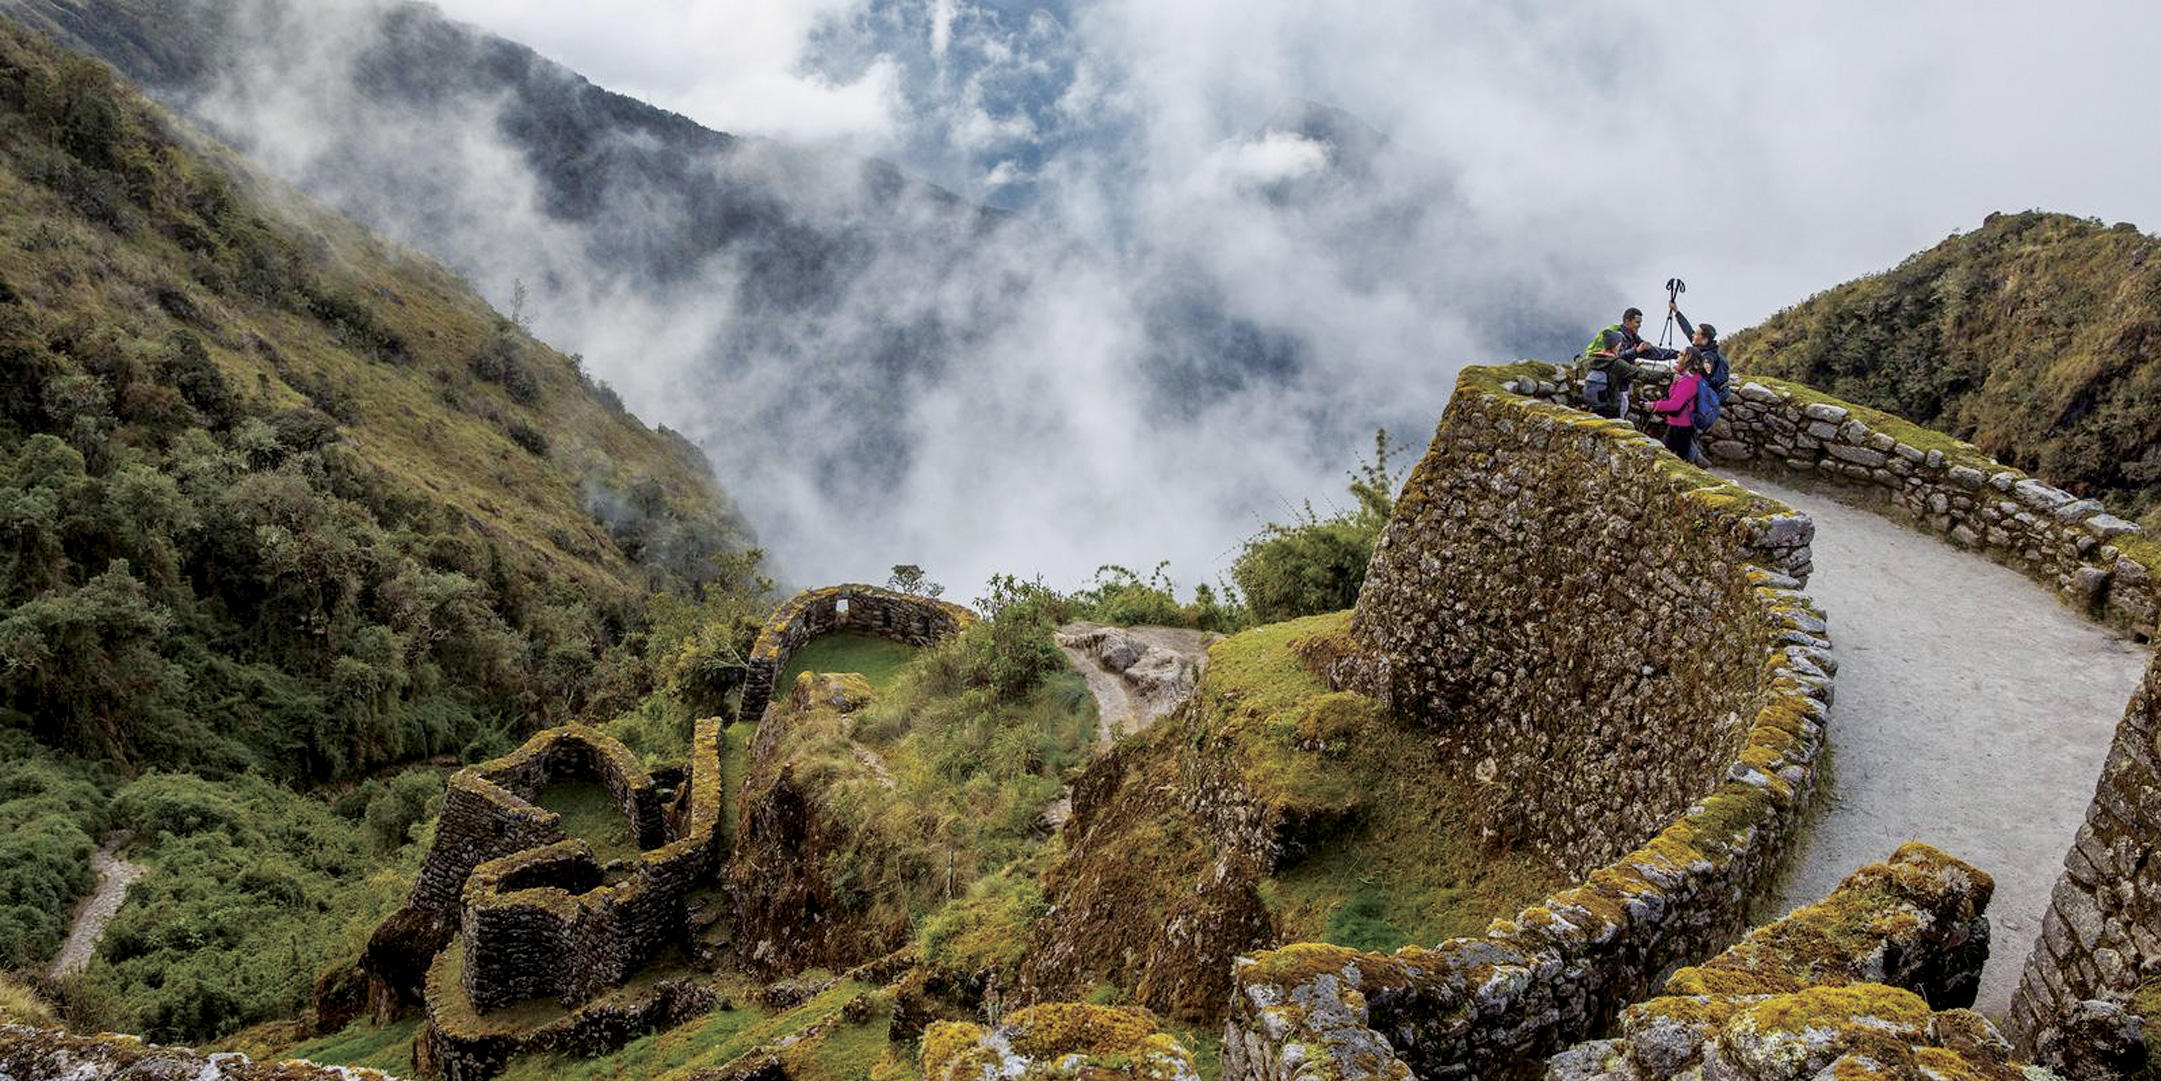 Inca trail 2 days